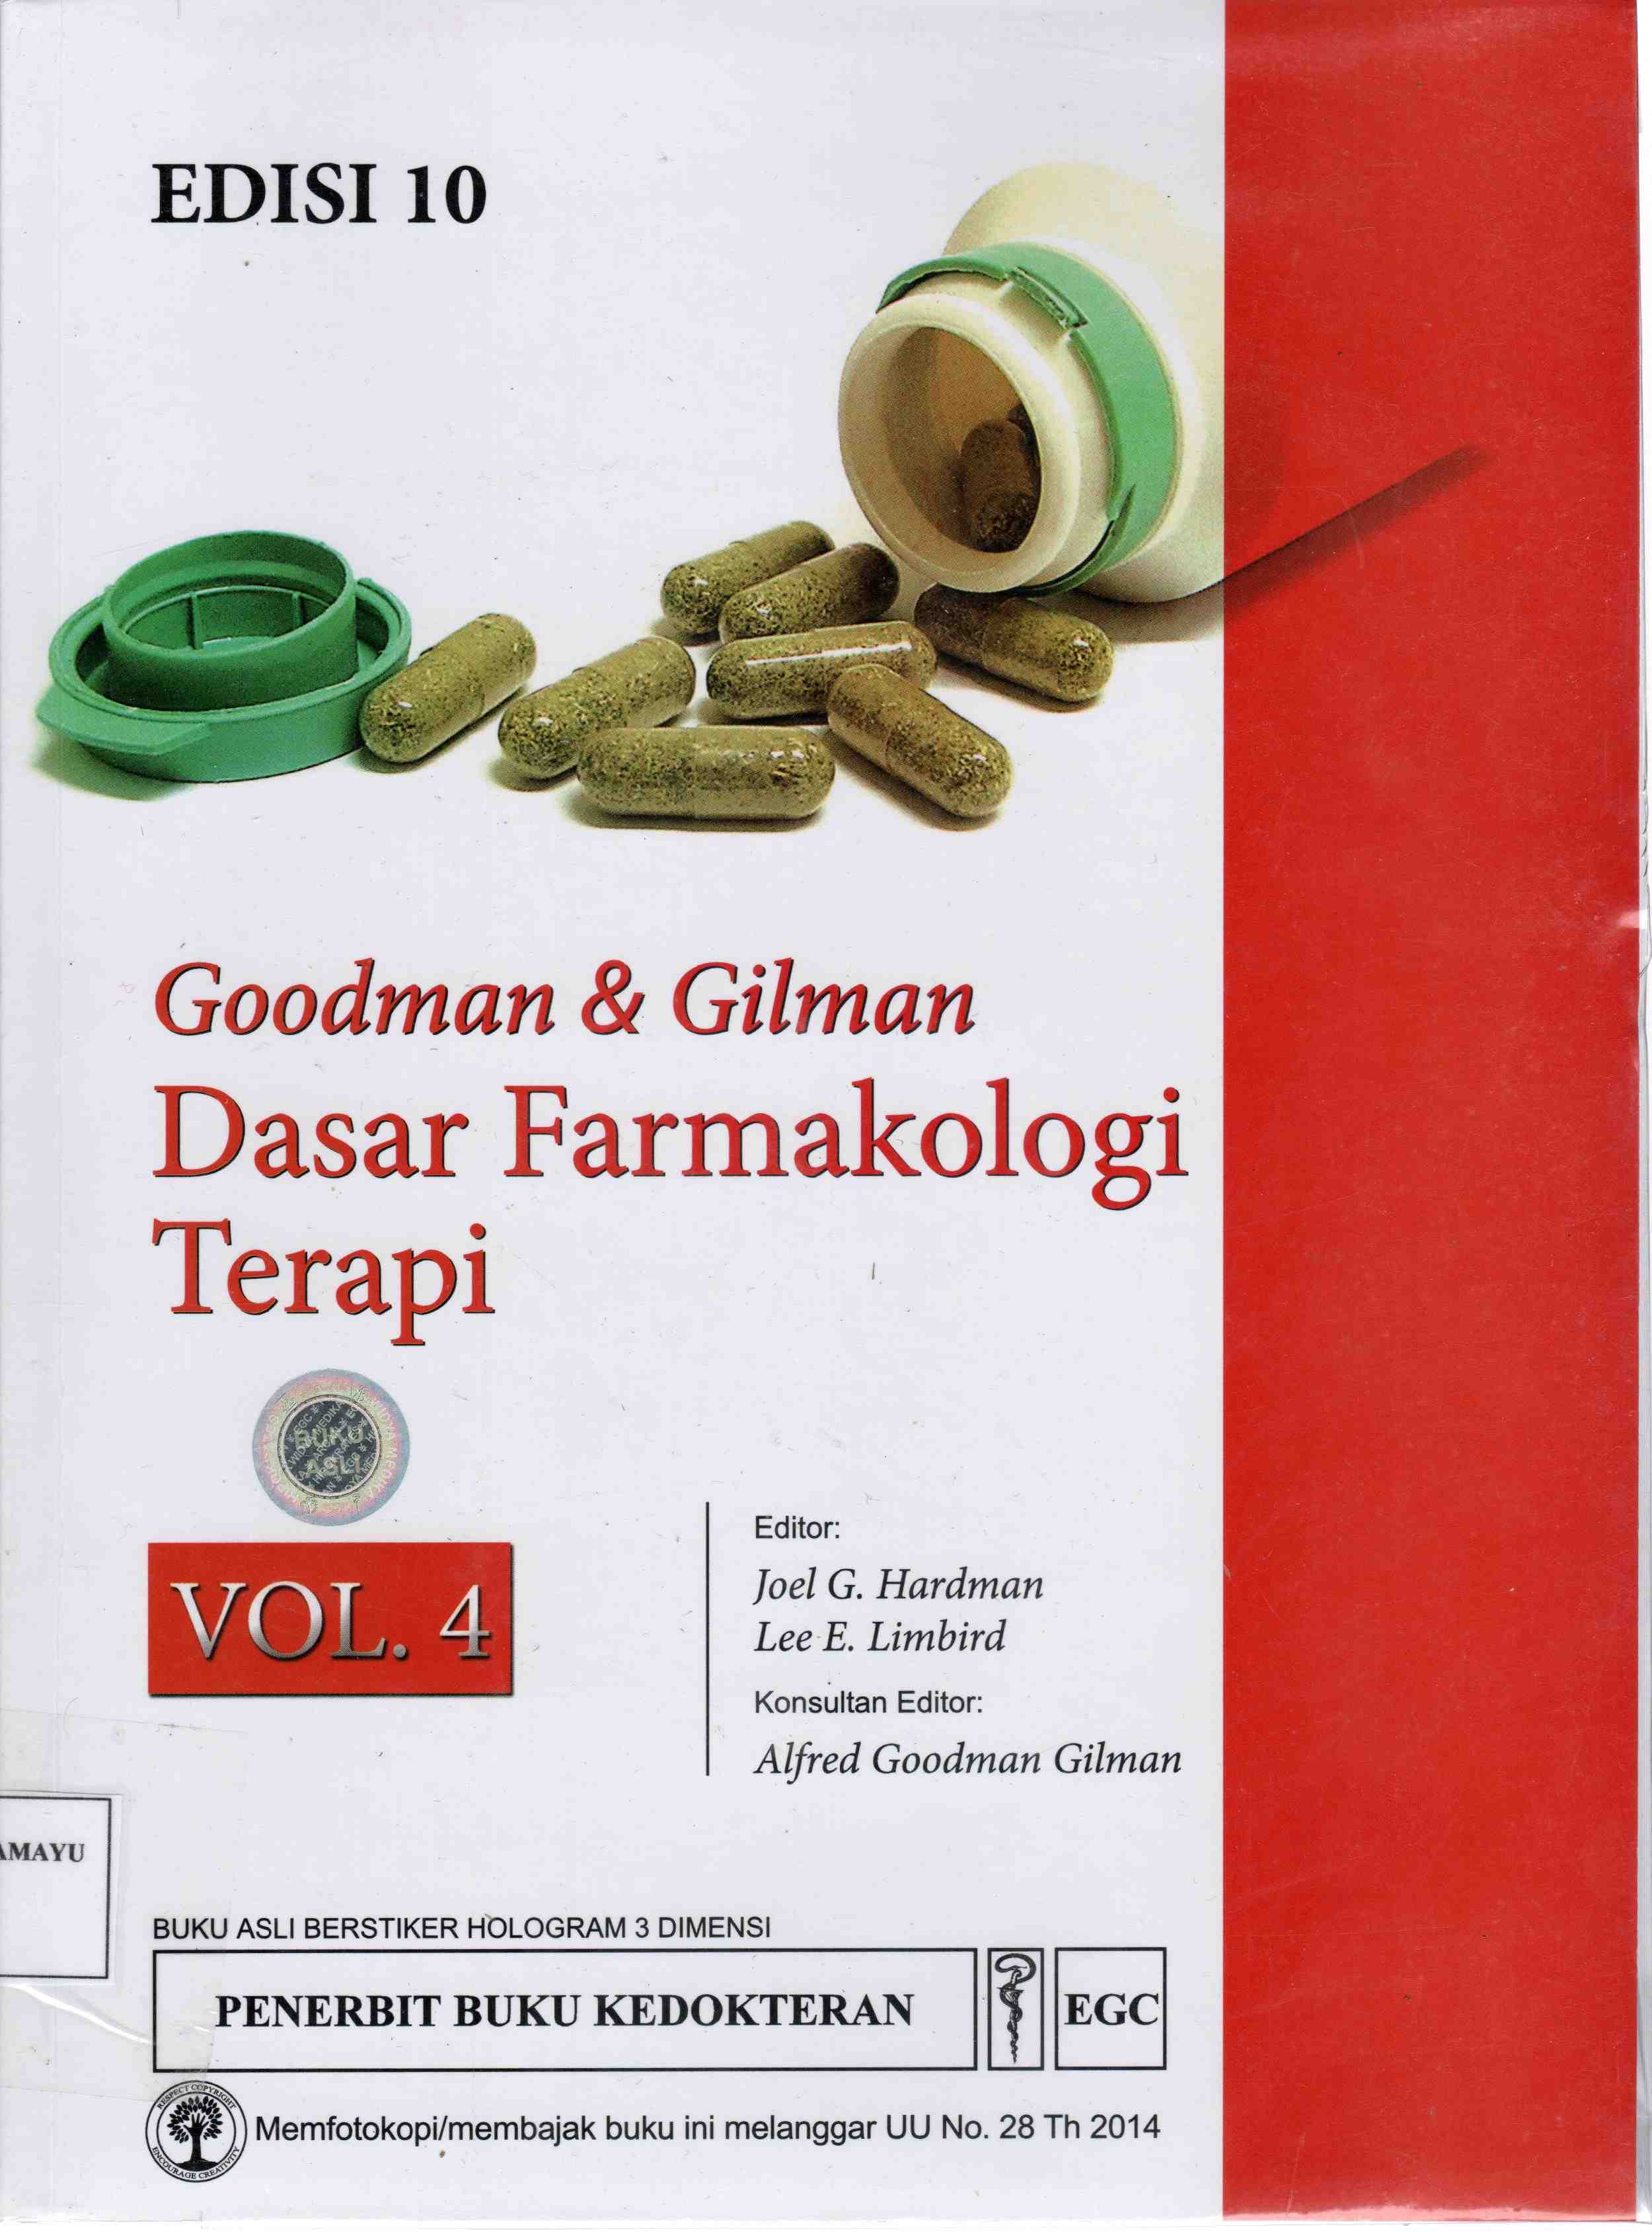 Goodman & Gilman : Dasar Farmakologi Terapi Vol 4 ED.10